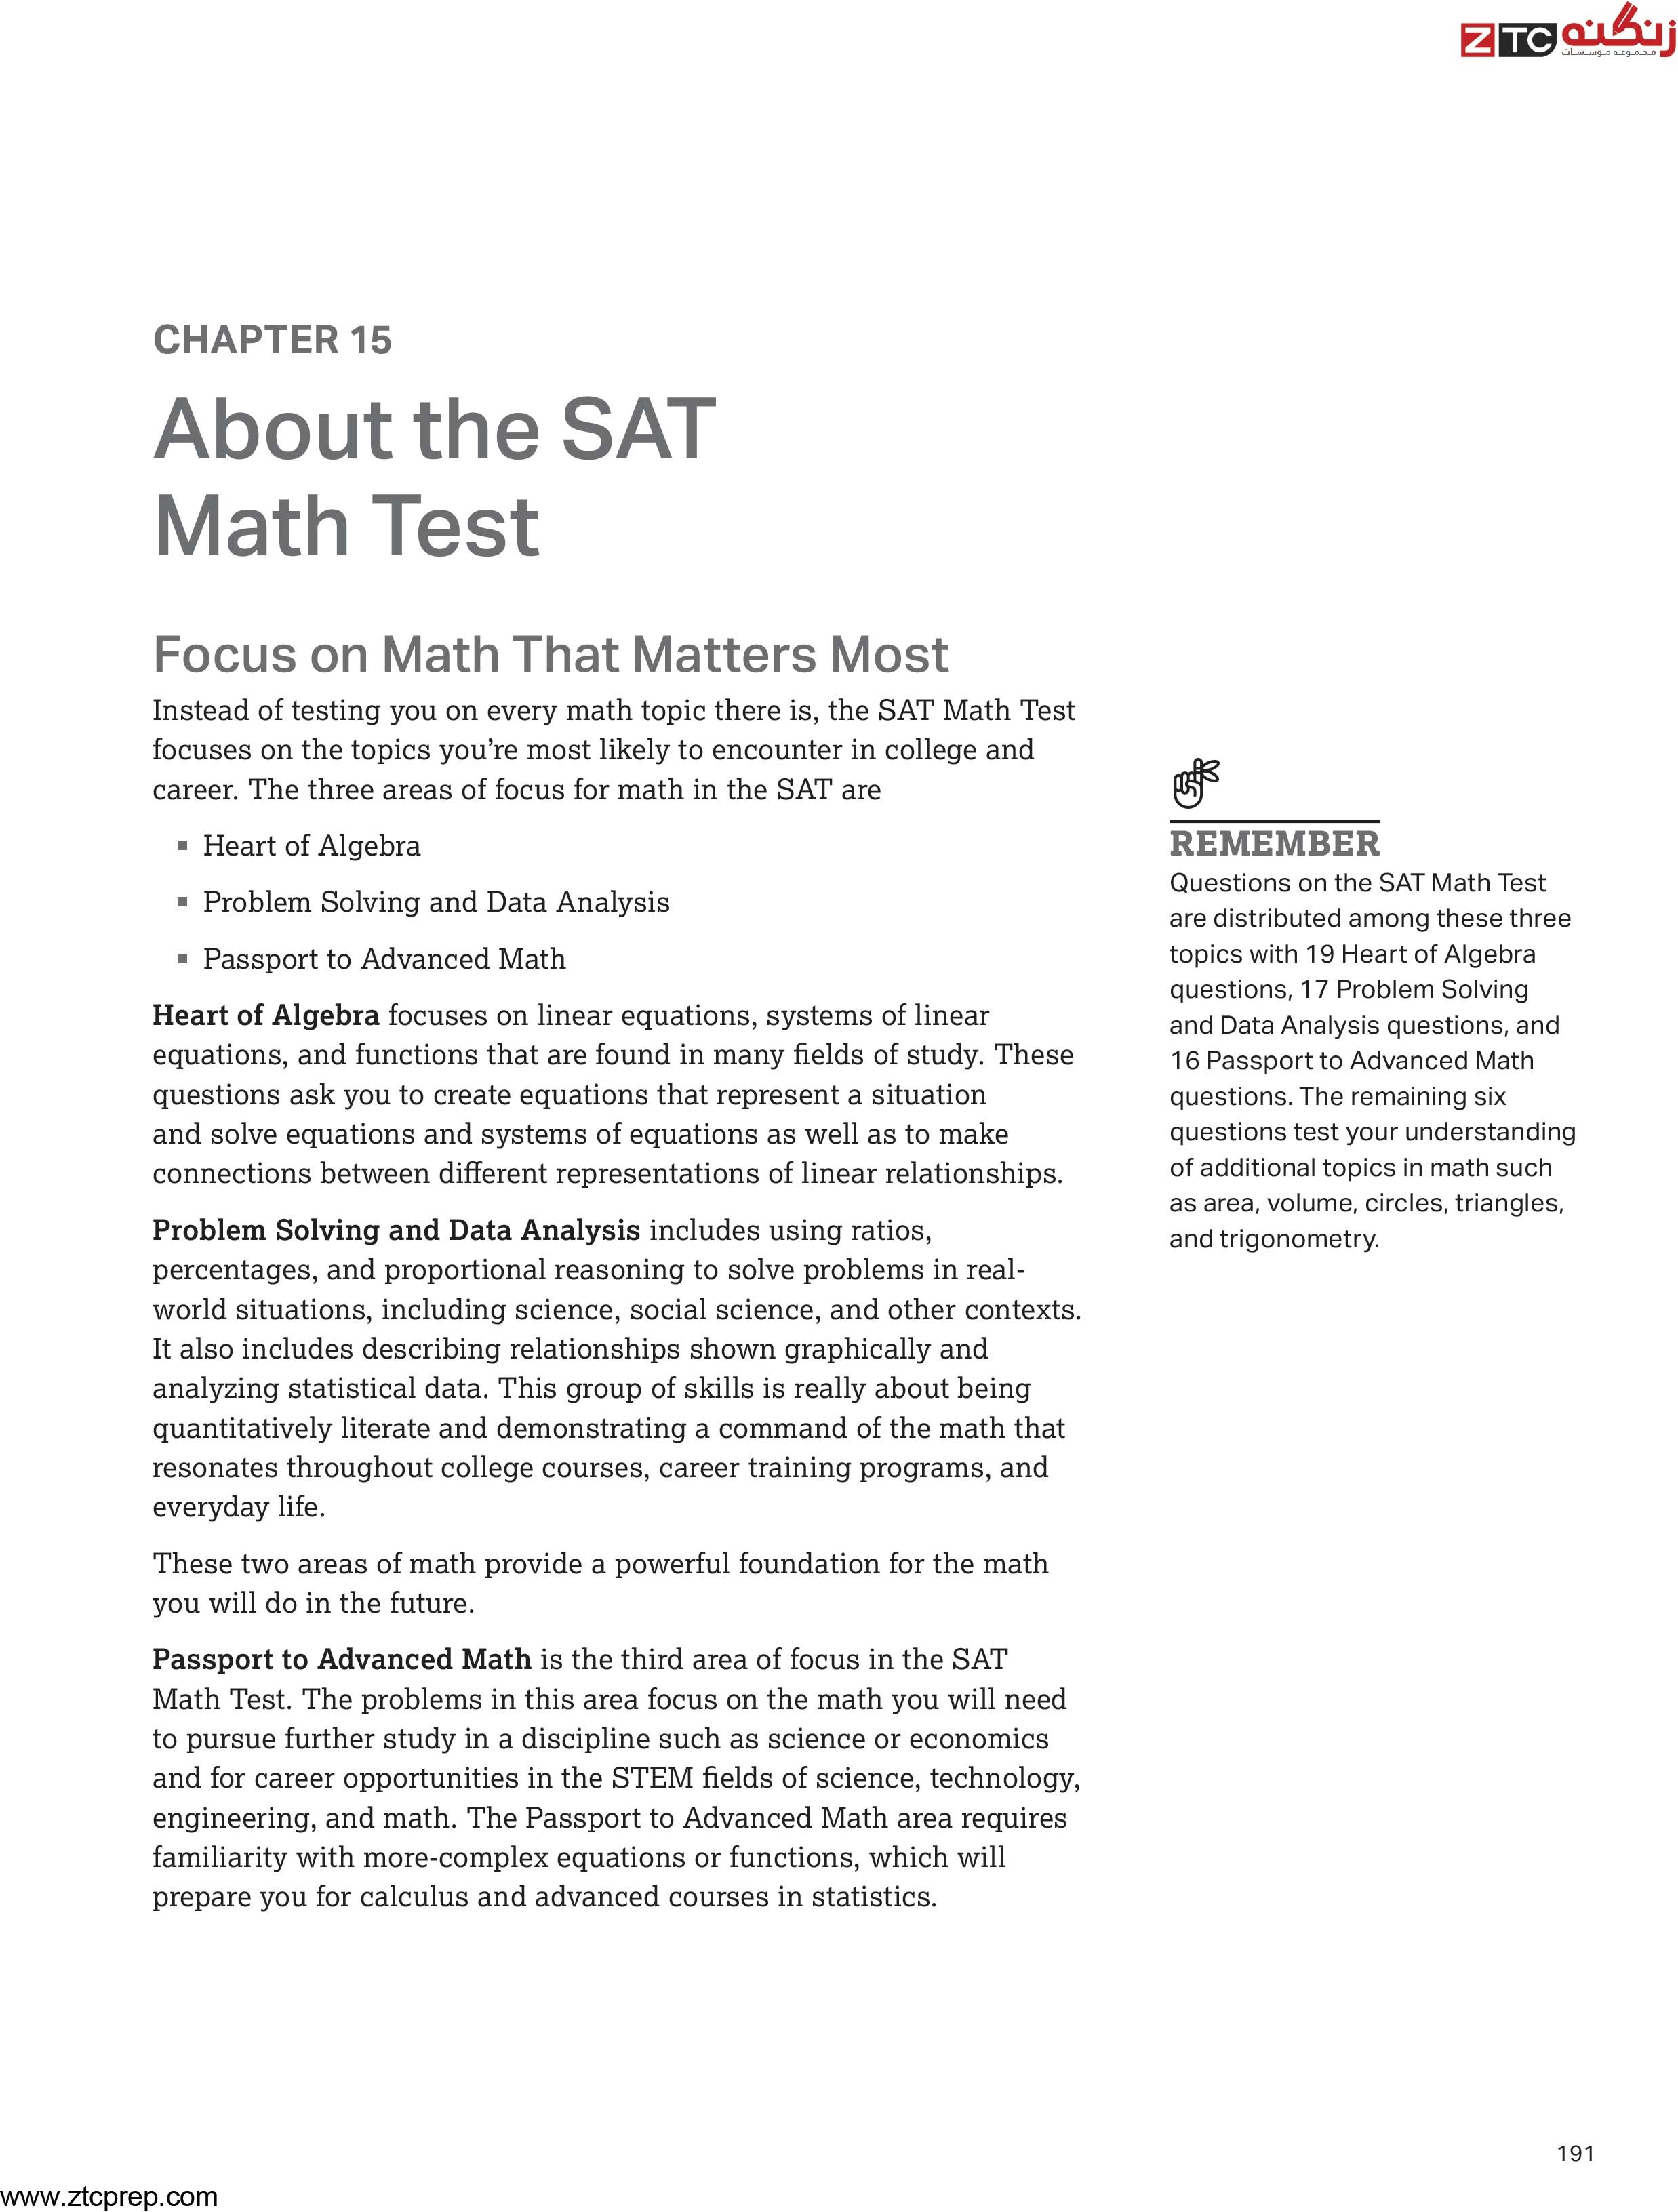 SAT Math Official book